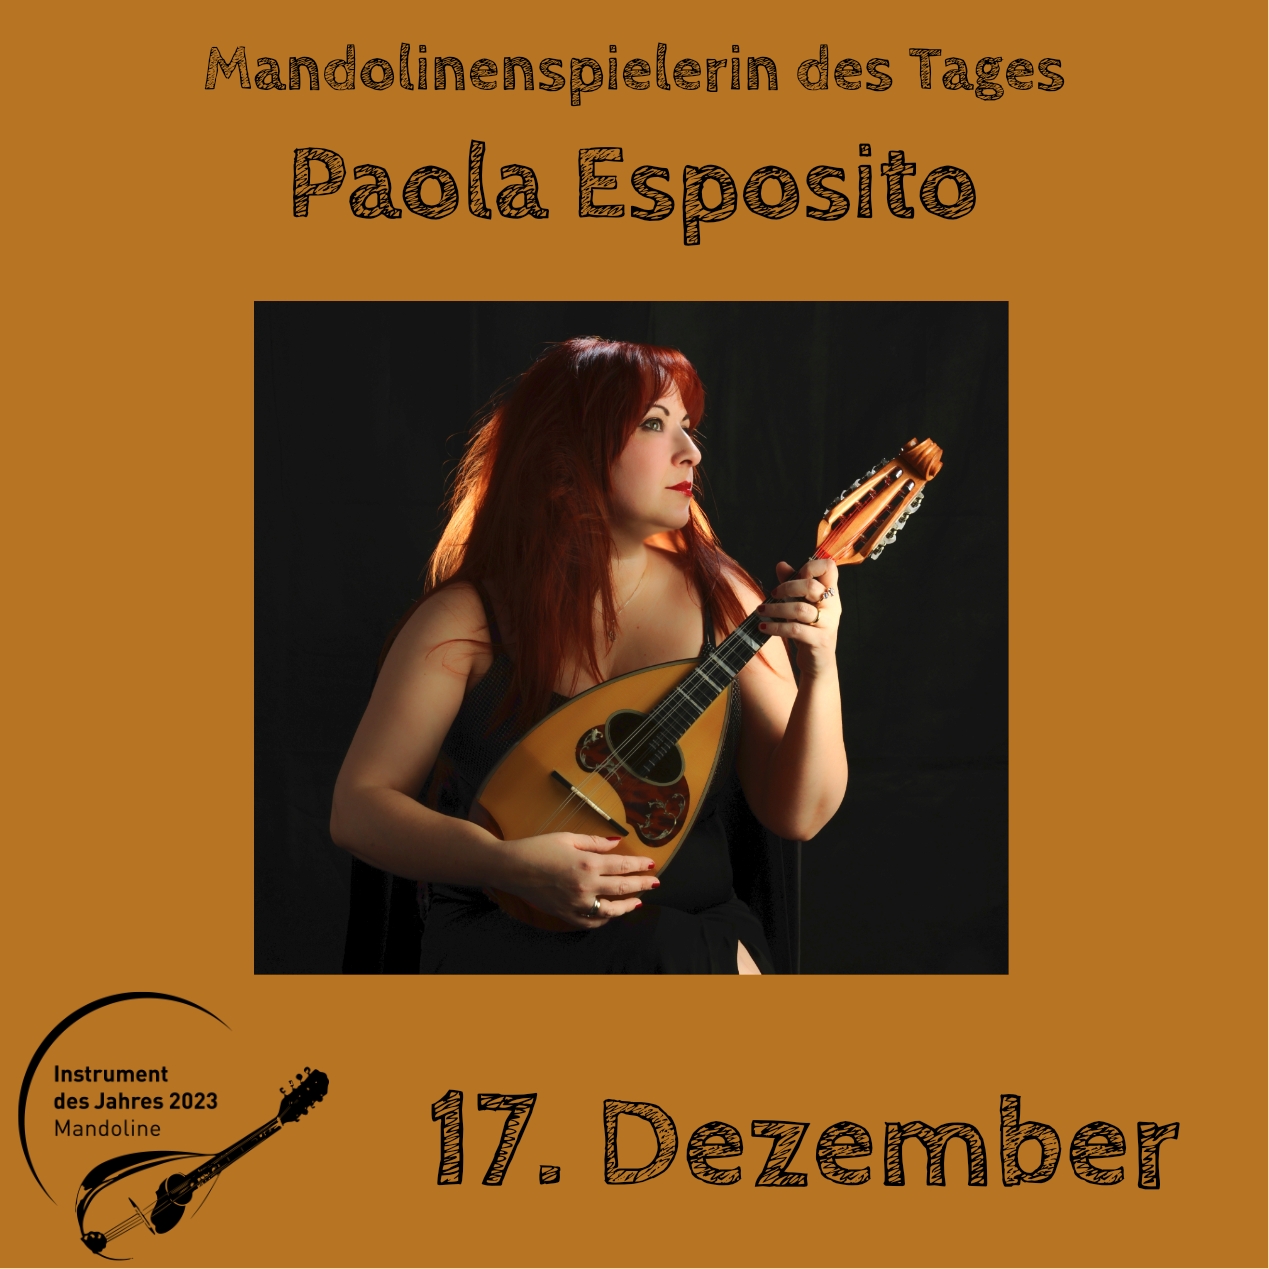 17. Dezember - Paola Esposito Instrument des Jahres 2023 Mandolinenspieler Mandolinenspielerin des Tages